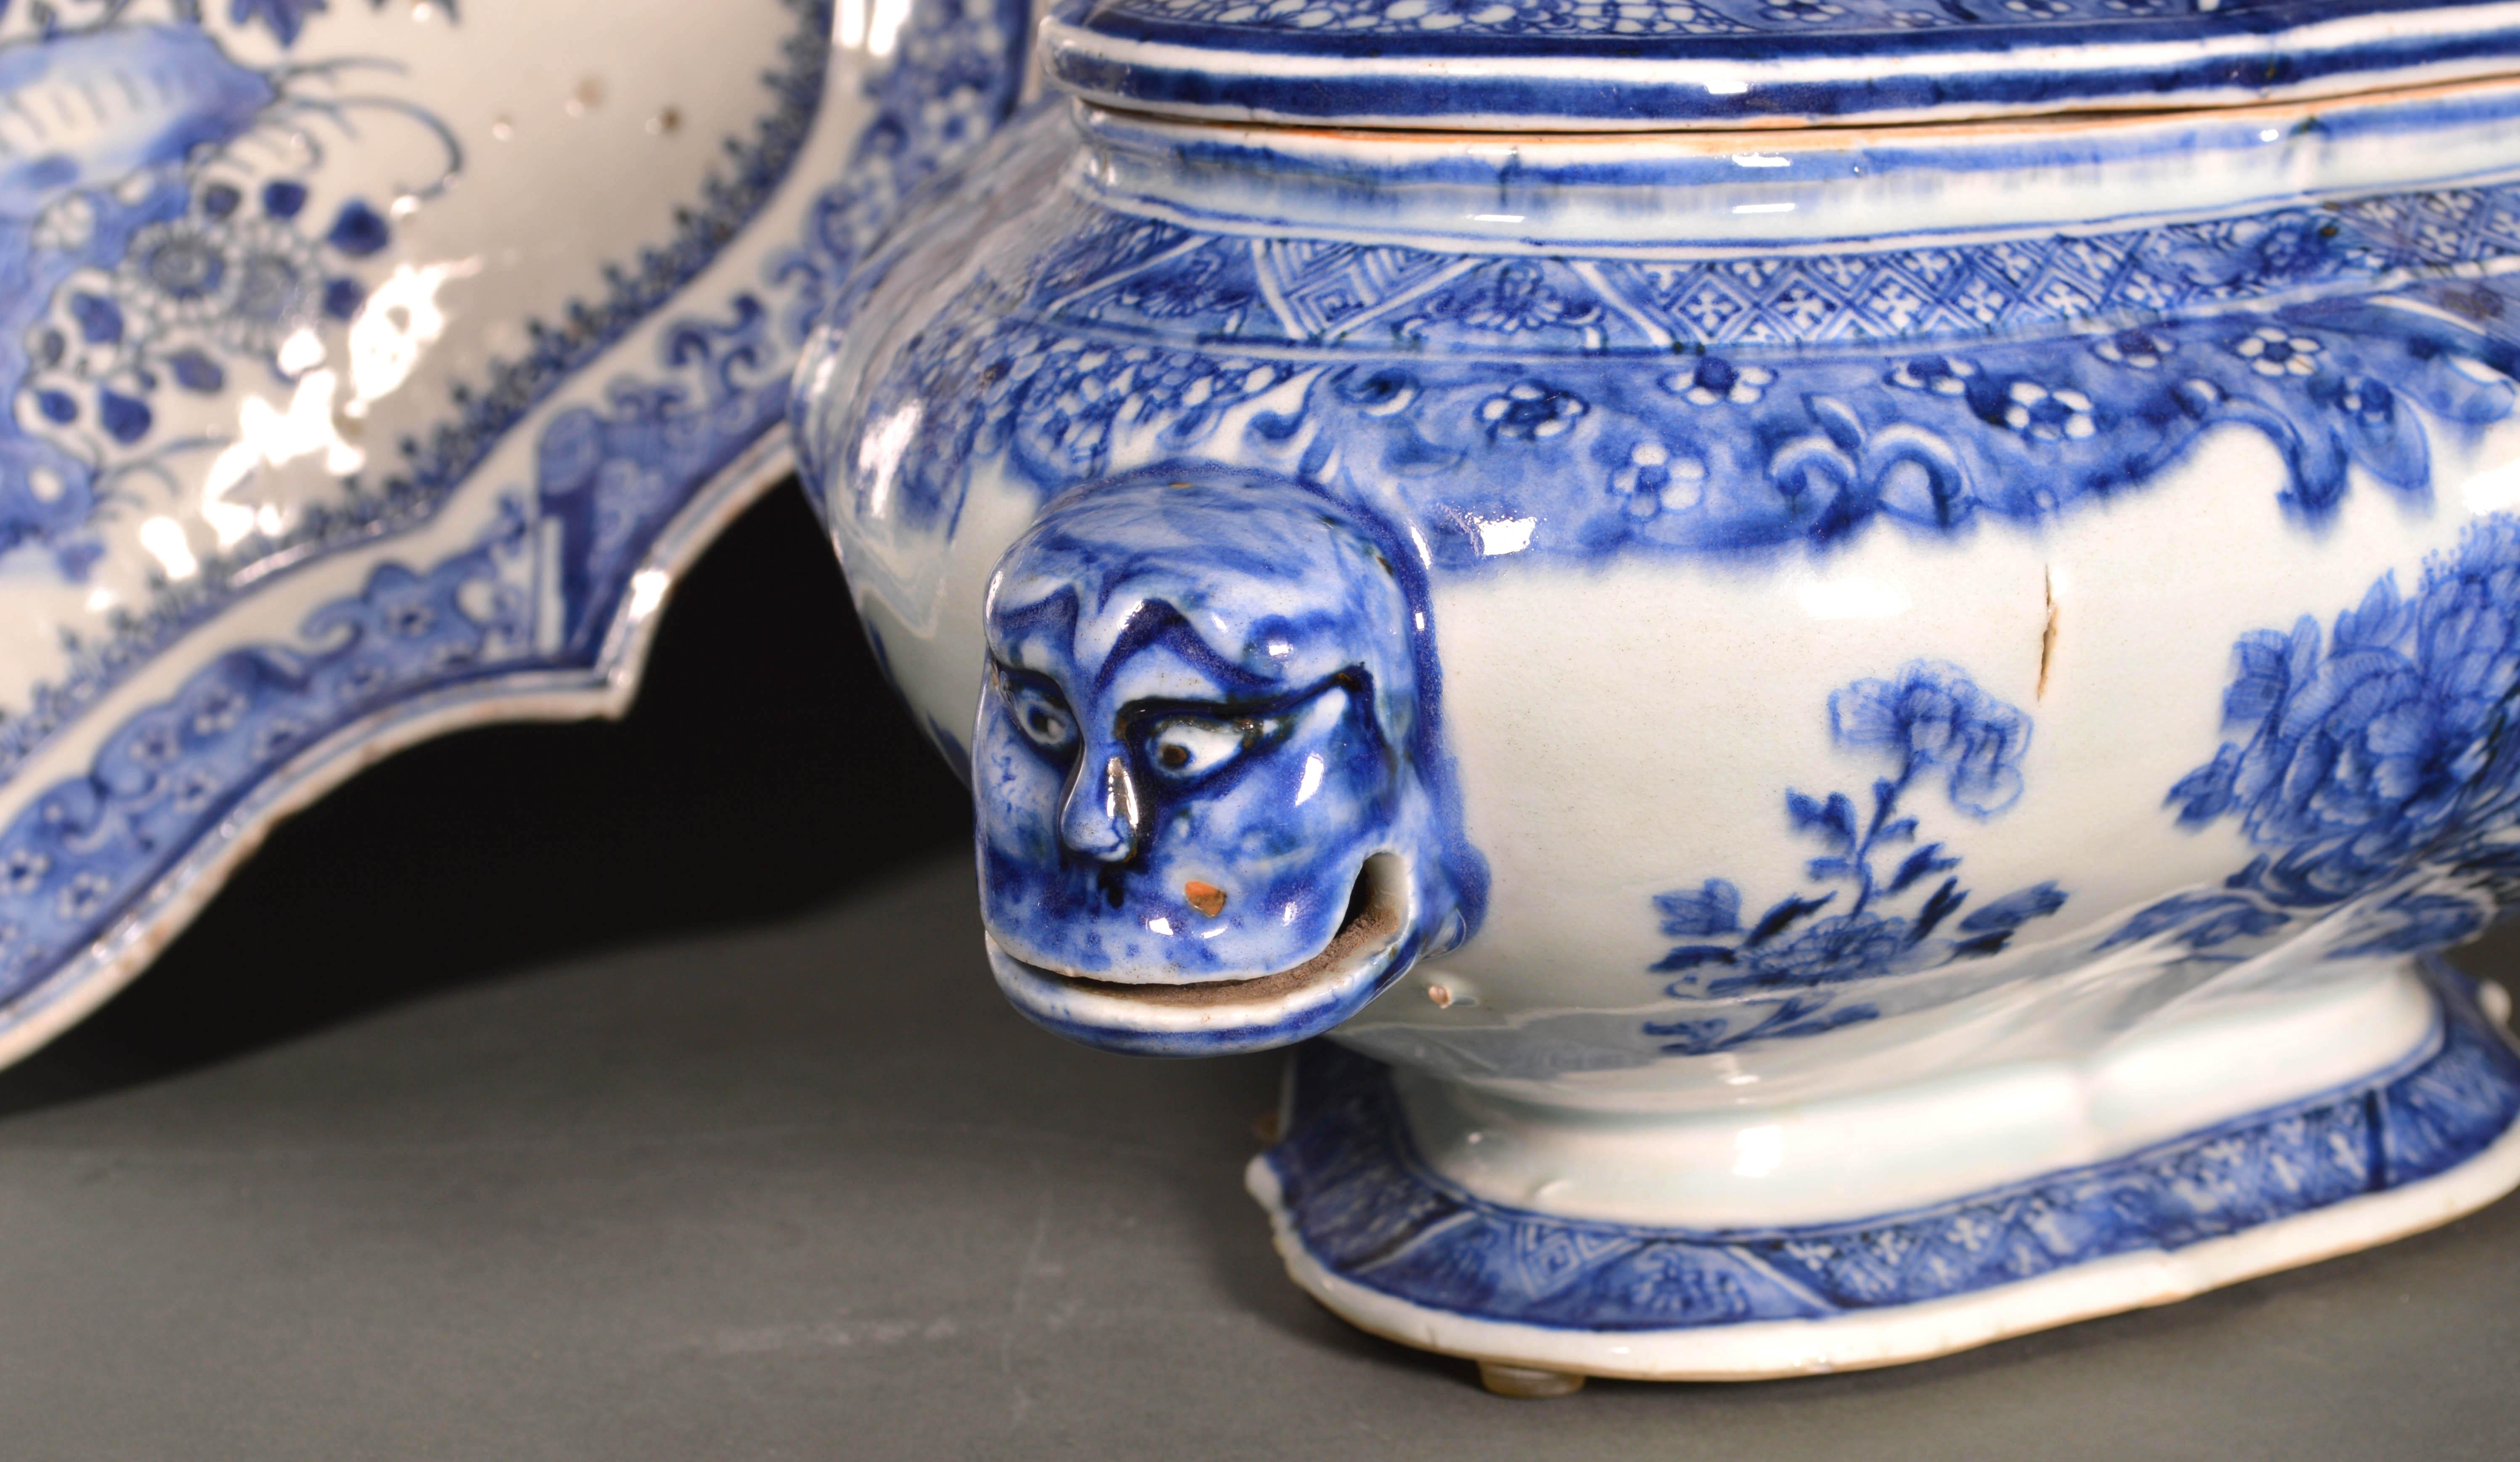 Soupière, couvercle et support en porcelaine d'exportation chinoise bleu et blanc,
vers 1740-1750 
   
Cette rare soupière en porcelaine d'exportation chinoise est de forme quadrilobée bombée et est peinte des deux côtés d'un jardin oriental avec